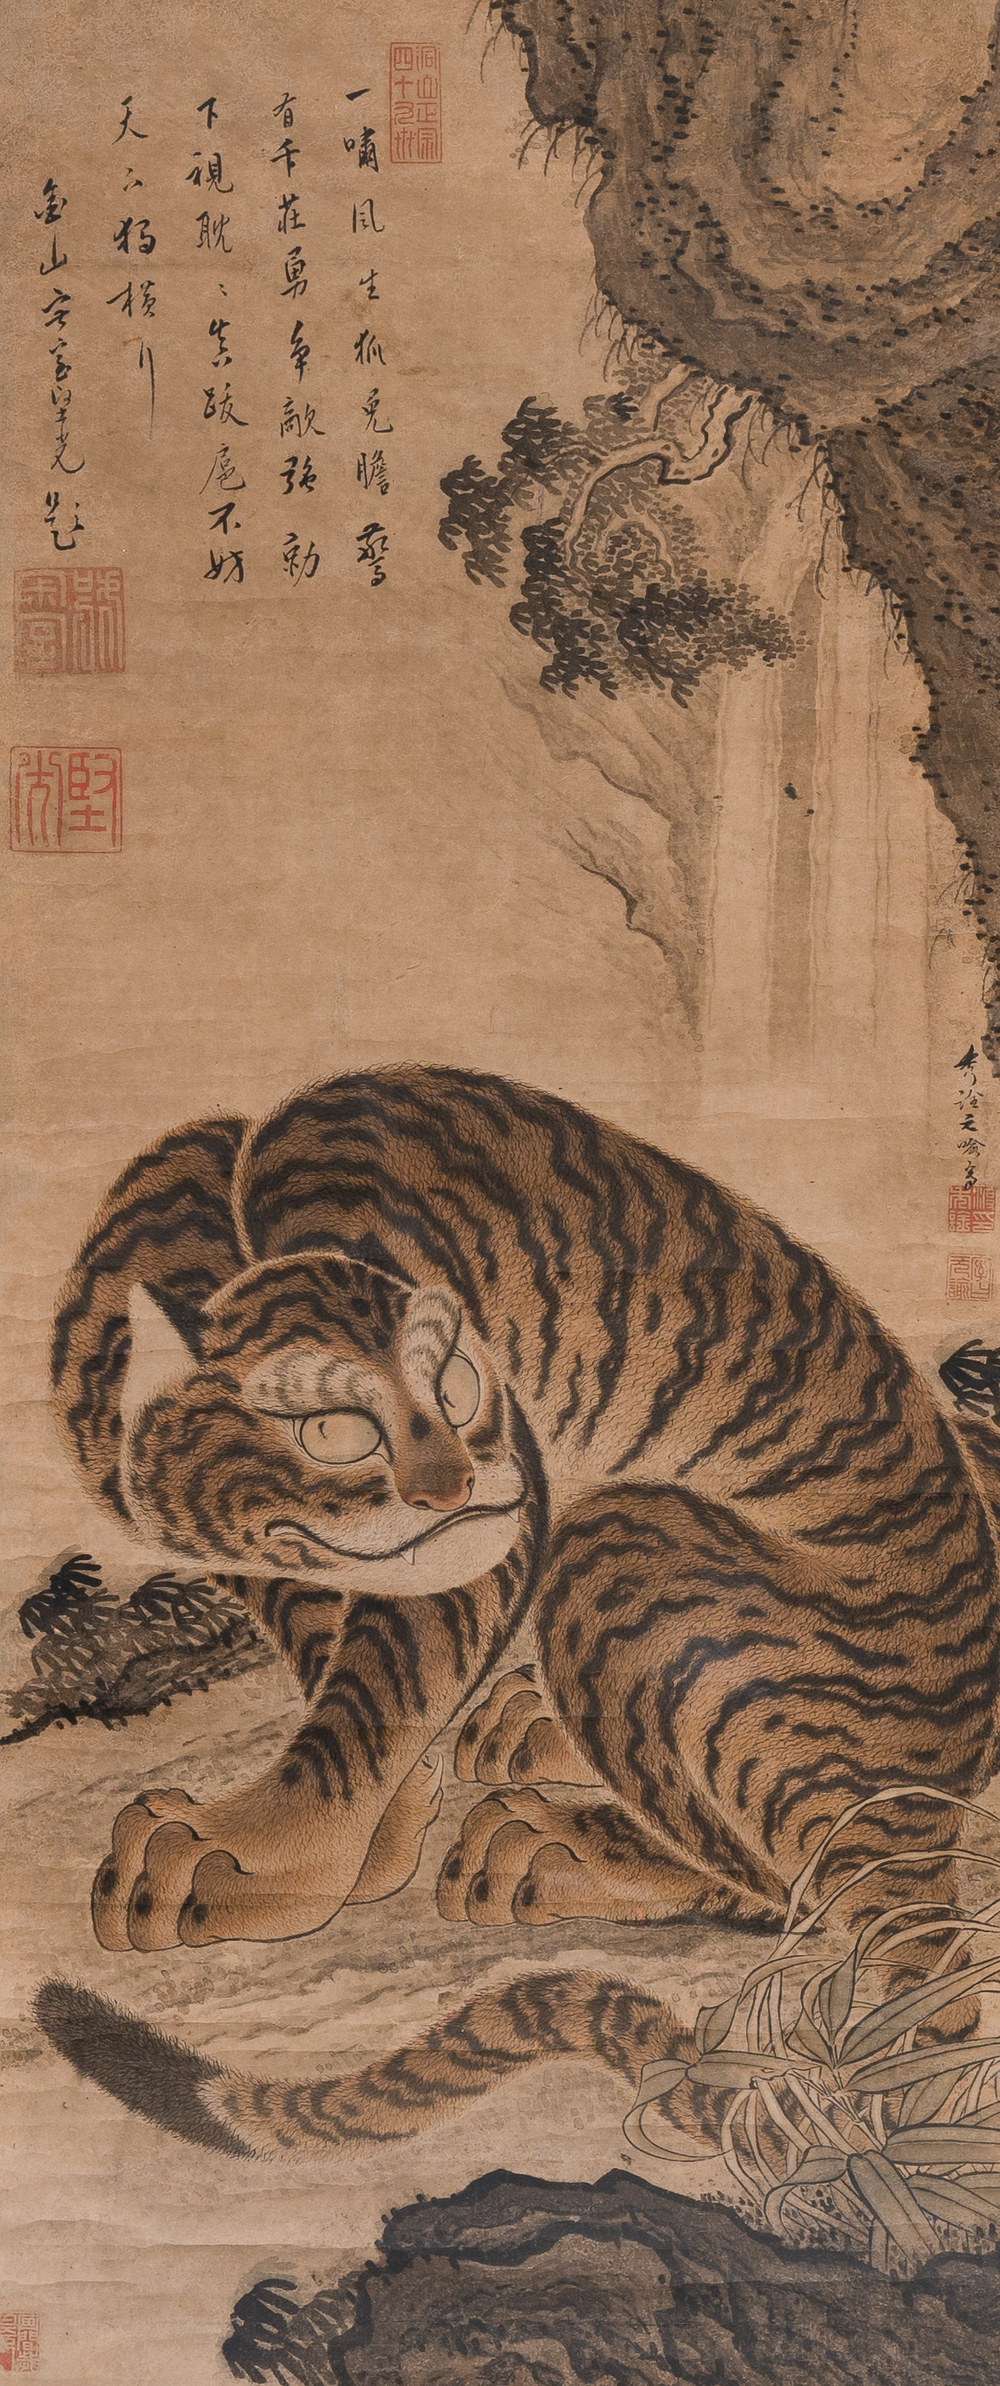 Watanabe Shusen (1736-1824): 'Tijger', inkt en kleur op papier